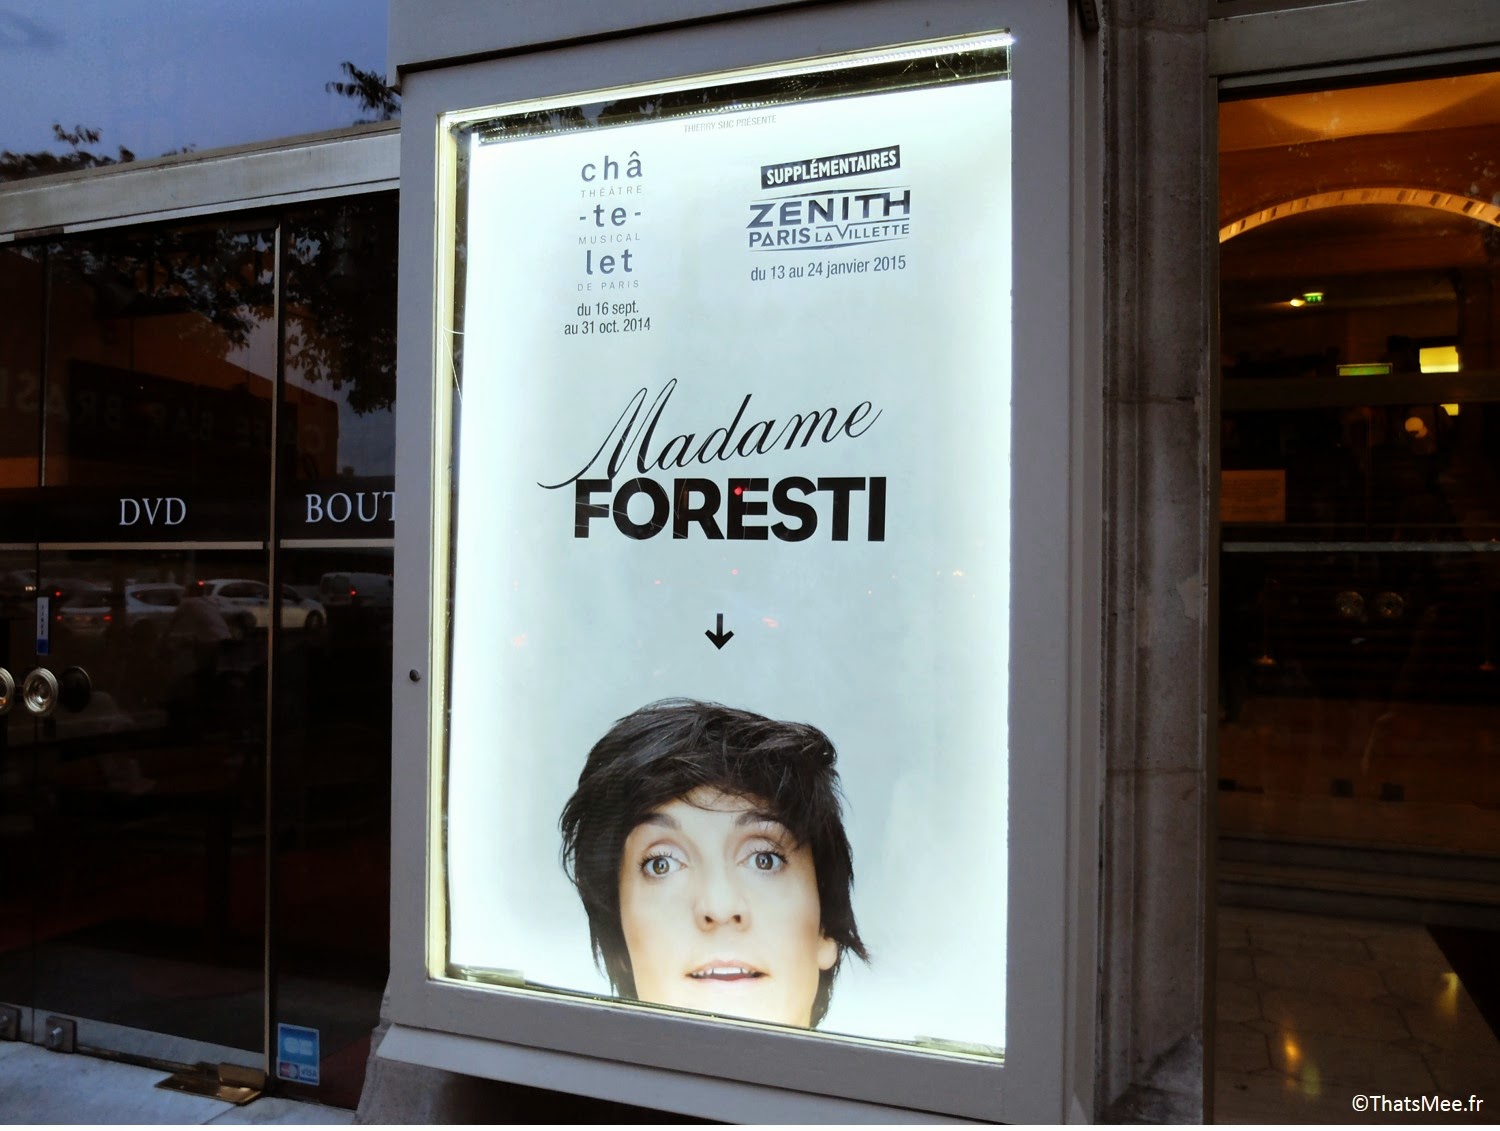 Madame Foresti, nouveau spectacle Florence Foresti Théâtre du Châtelet Paris Florence Foresti critique 40ans quarantaine one-woman show humour Madame Foresti